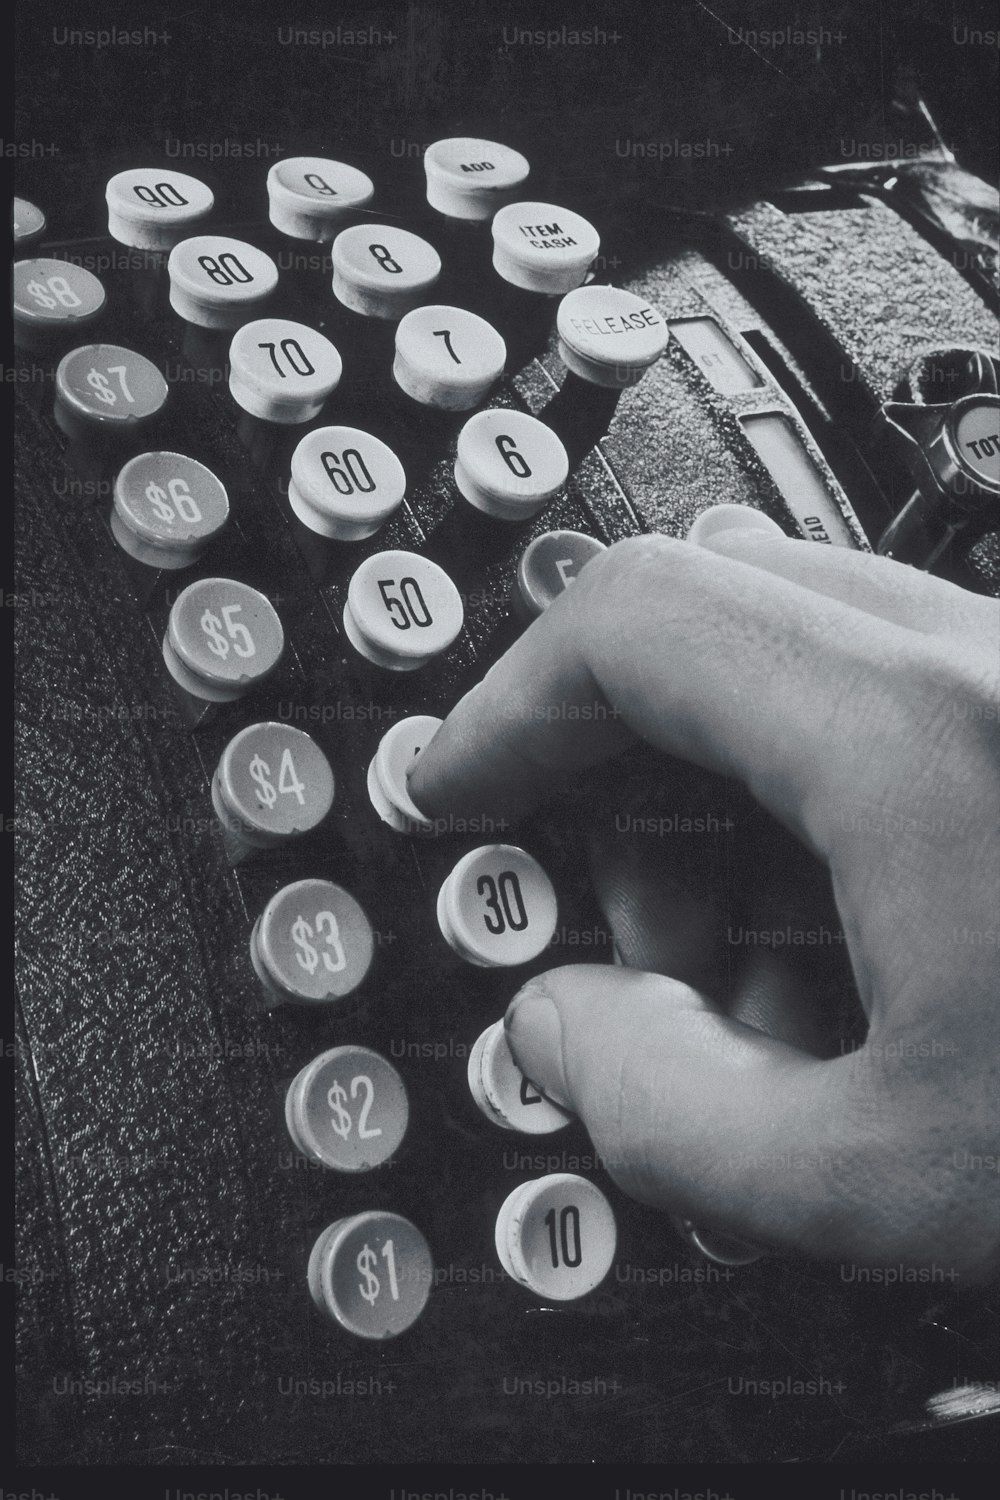 una persona escribiendo en una máquina de escribir pasada de moda